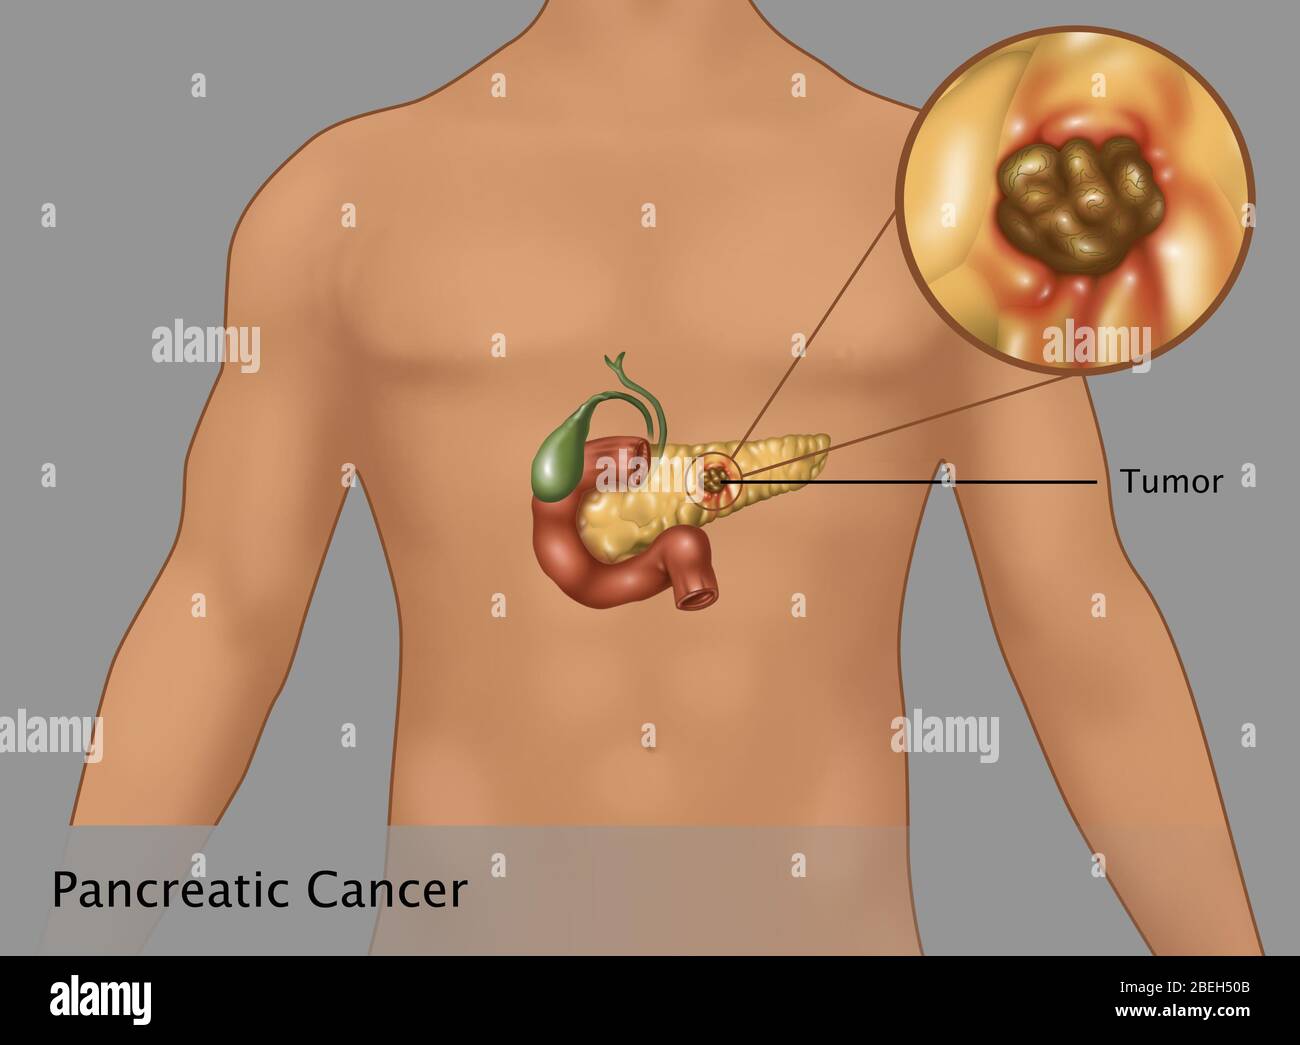 Illustrazione del cancro pancreatico inset in un contorno di una figura maschile. Al centro del pancreas è il tumore (brown area). Sono inoltre presenti il gallbladder (verde) e duodeno bruciato (rosso). Foto Stock